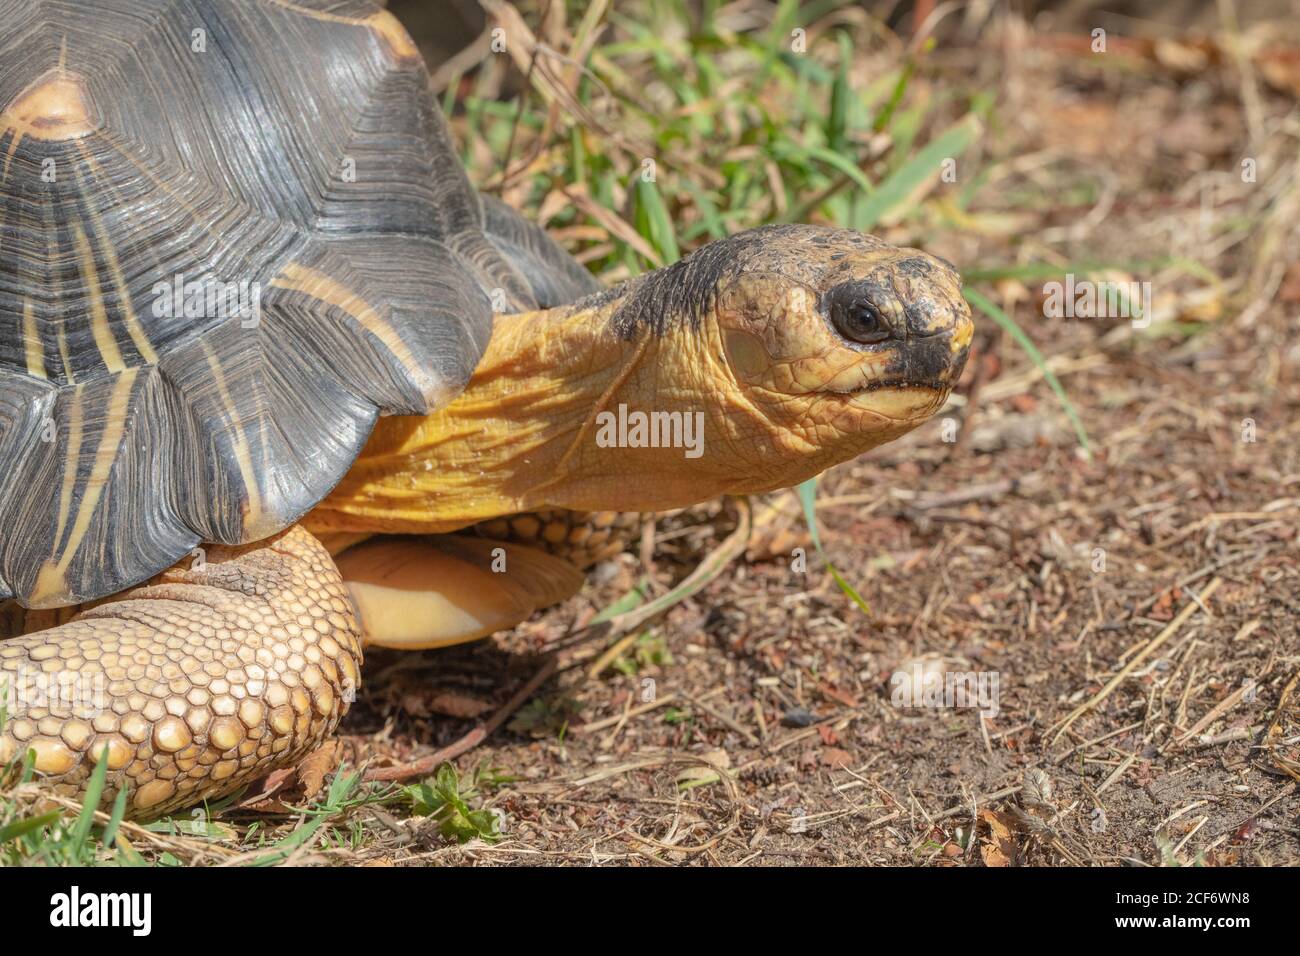 Radiated Tortoise (Astrochelys radiata). Kopfprofil in Nahaufnahme. Gesichts- und Gesichtszüge, Augenkontakt. Kopf und Hals vollständig von der Schale verlängert. Stockfoto